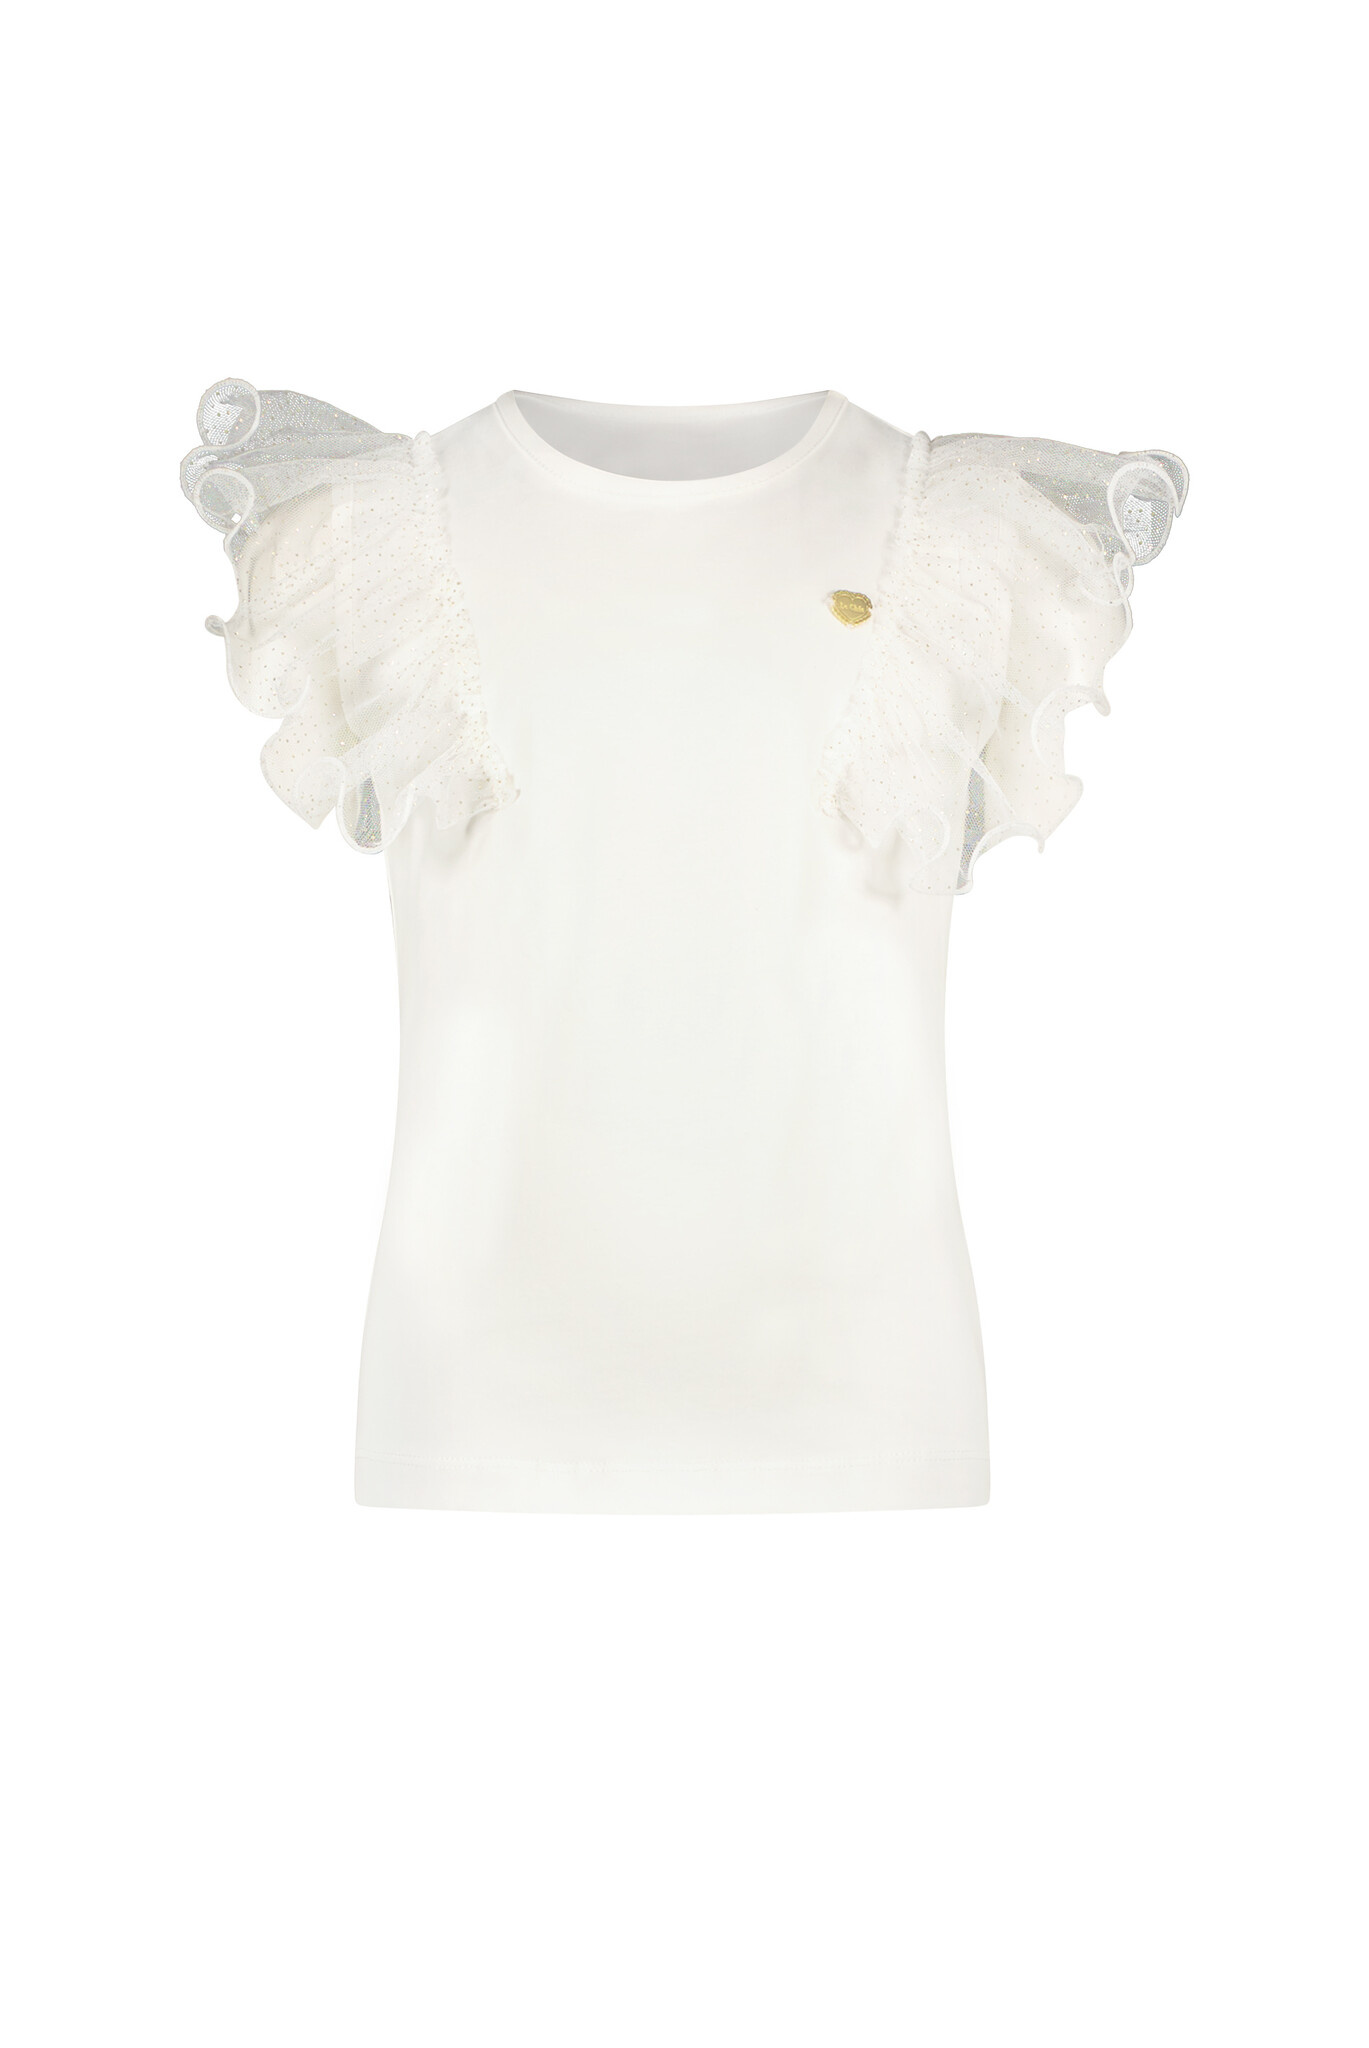 Le Chic C312-5402 Meisjes T-shirt - Off White - Maat 152